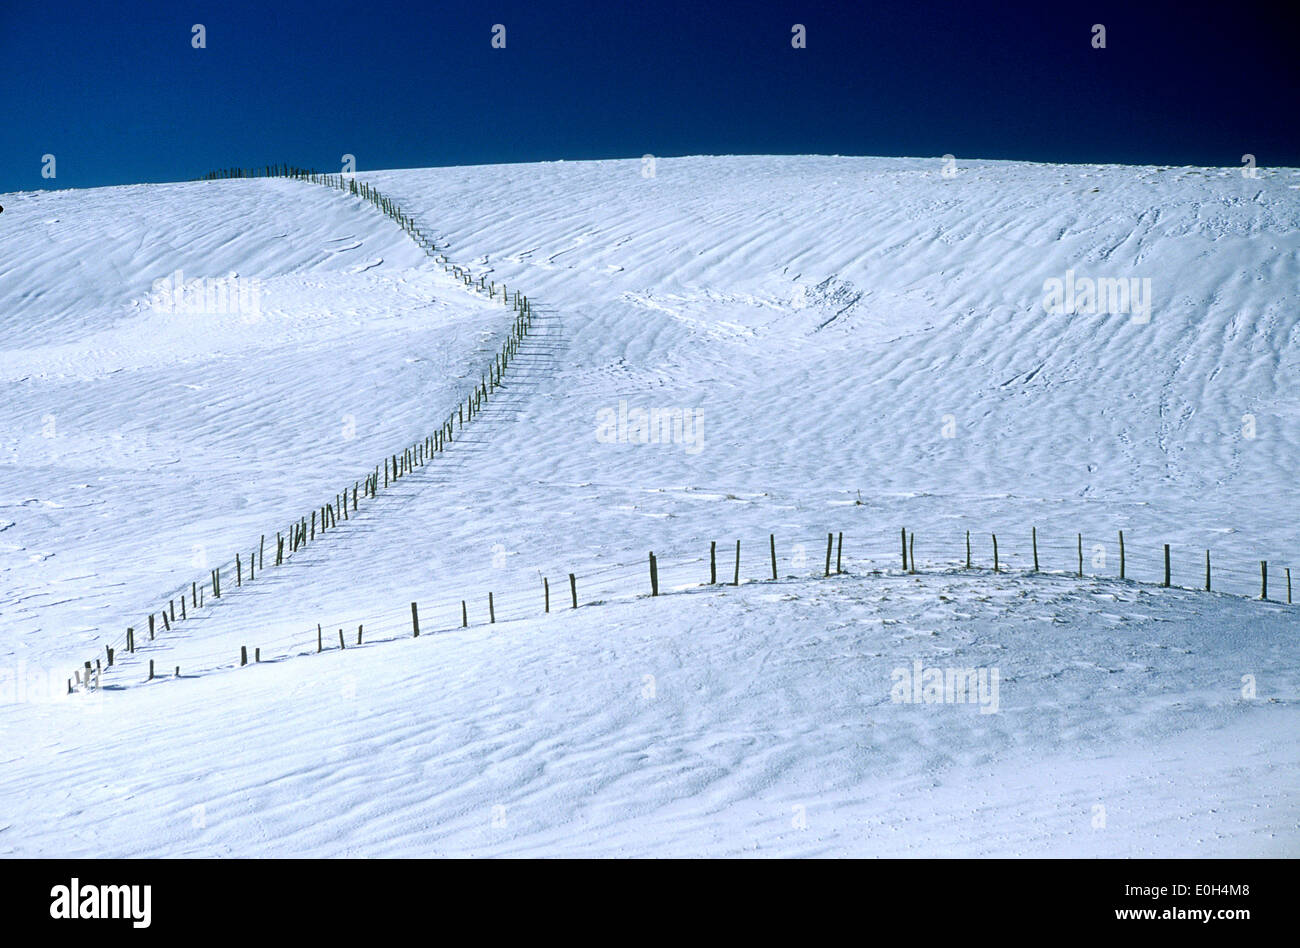 Hügel mit Schnee im Winter und Zäunen - Winter landschaft schnee Szene Stockfoto